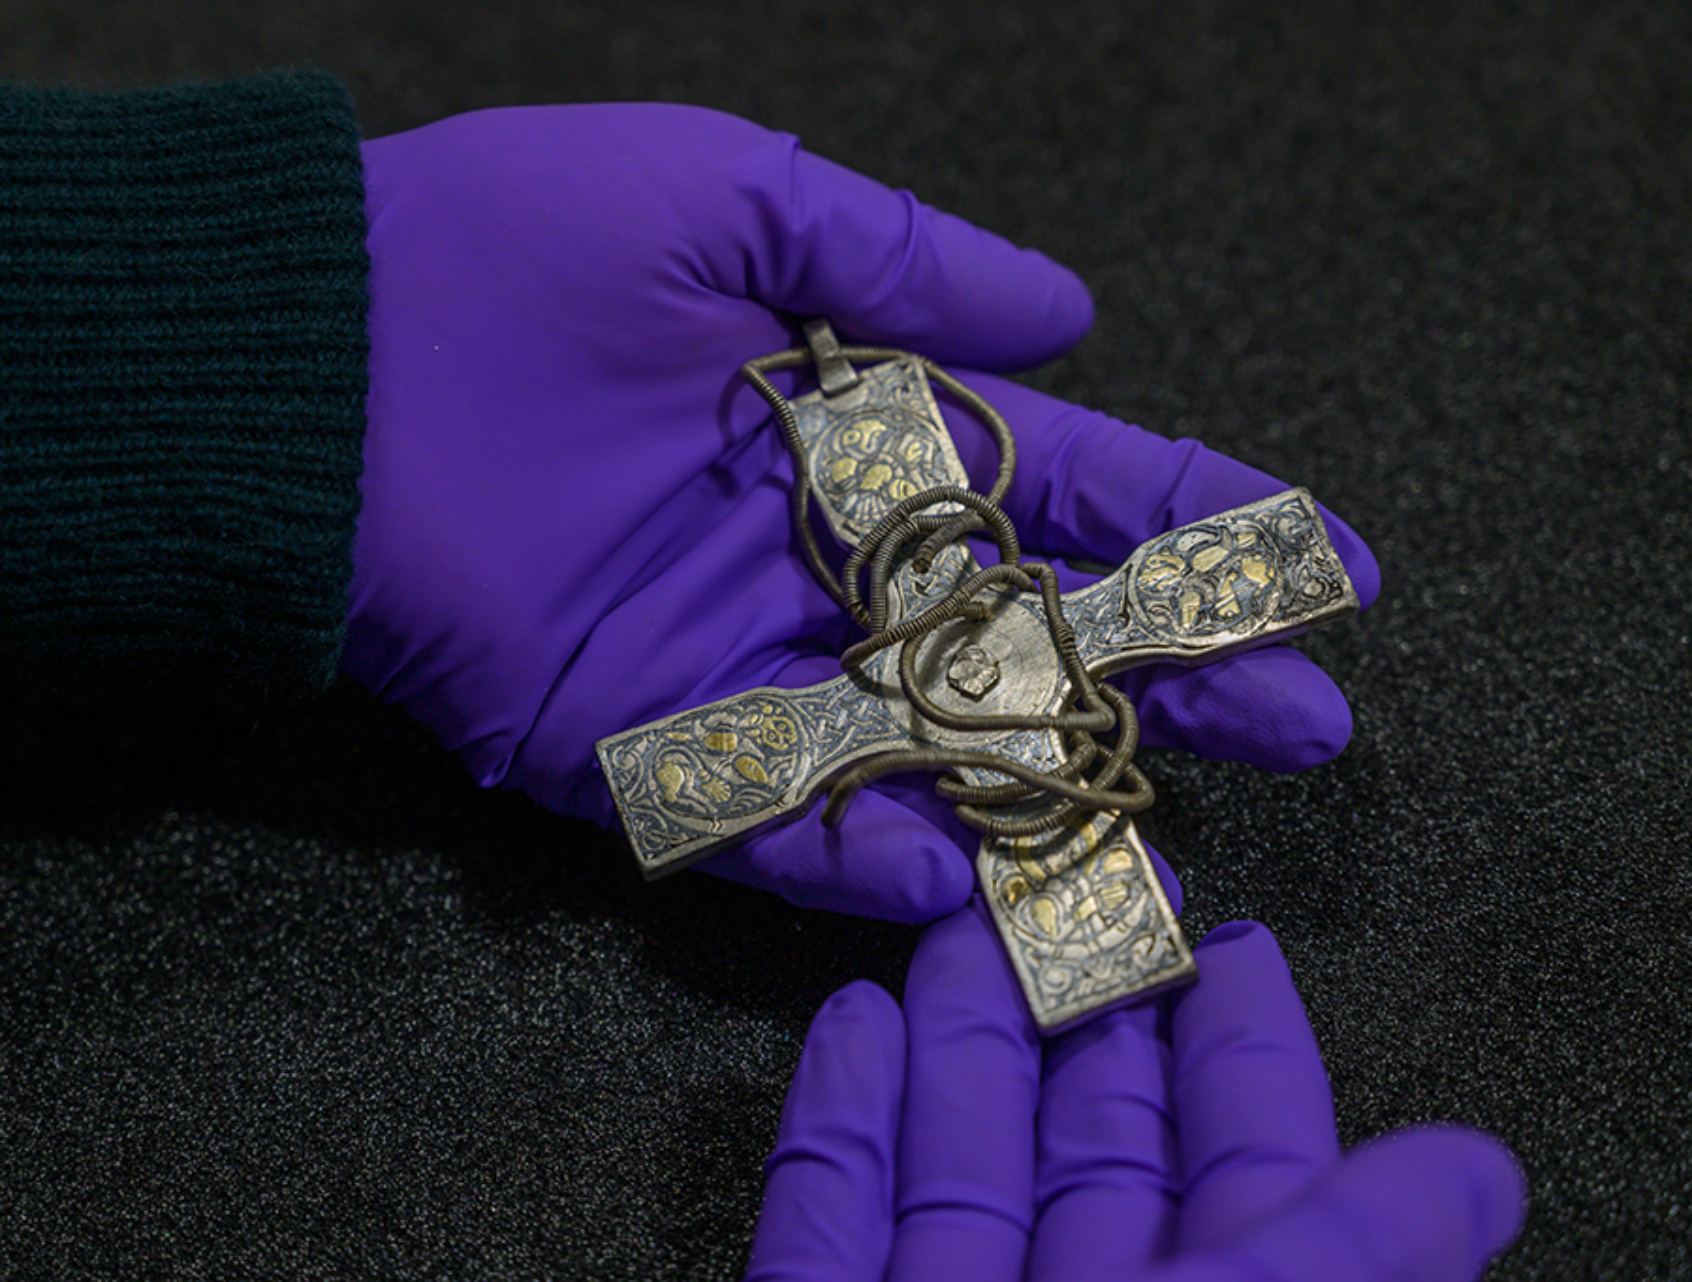 صلیب سینه ای نقره ای تزئین شده با زنجیر سیمی از عصر وایکینگ هارد گالووی.